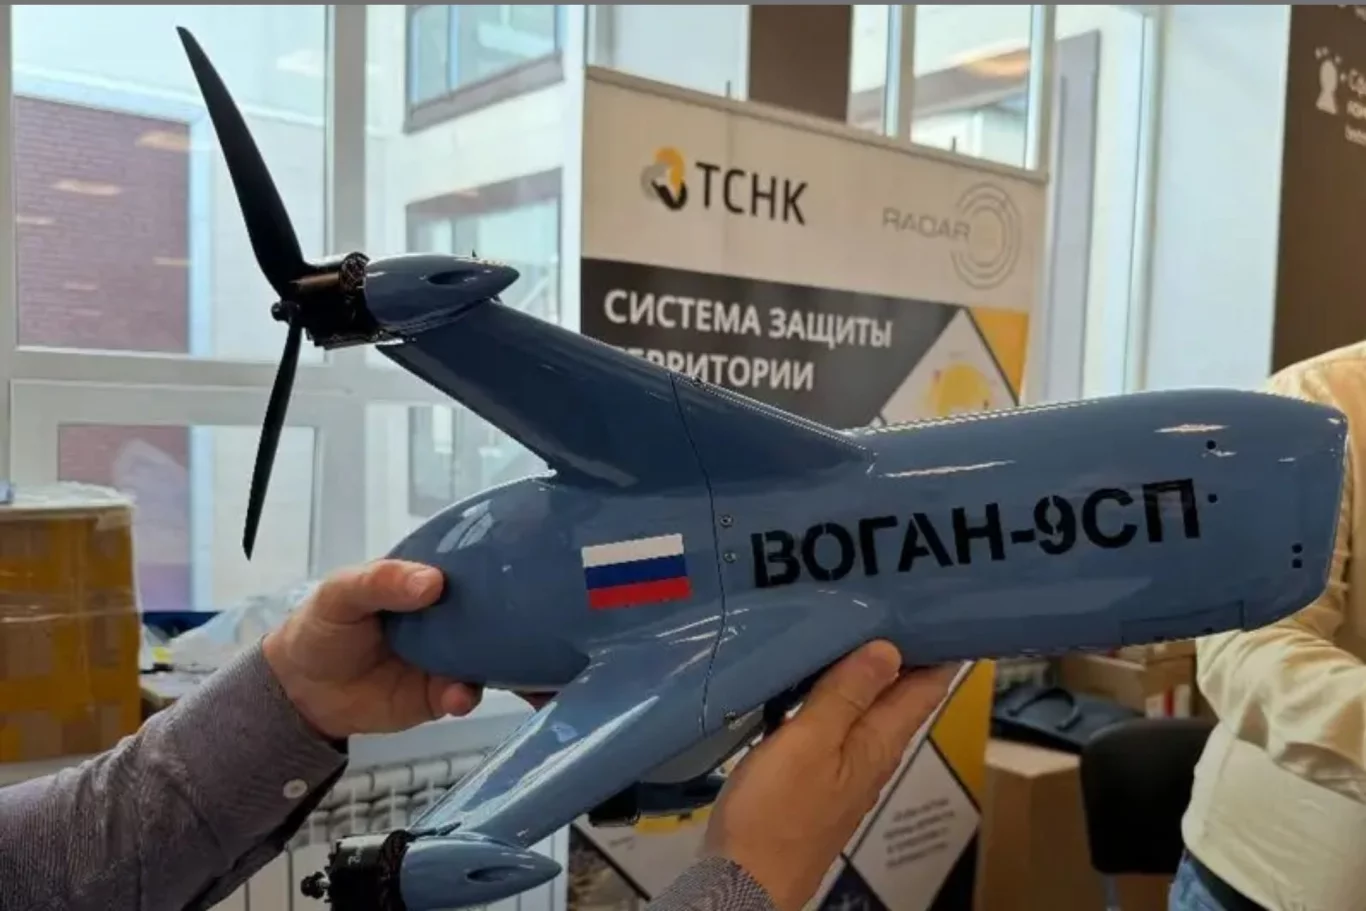 روسيا تطور طائرة اعتراضية بدون طيار بدون طيار بدافع عقيدة الحرب